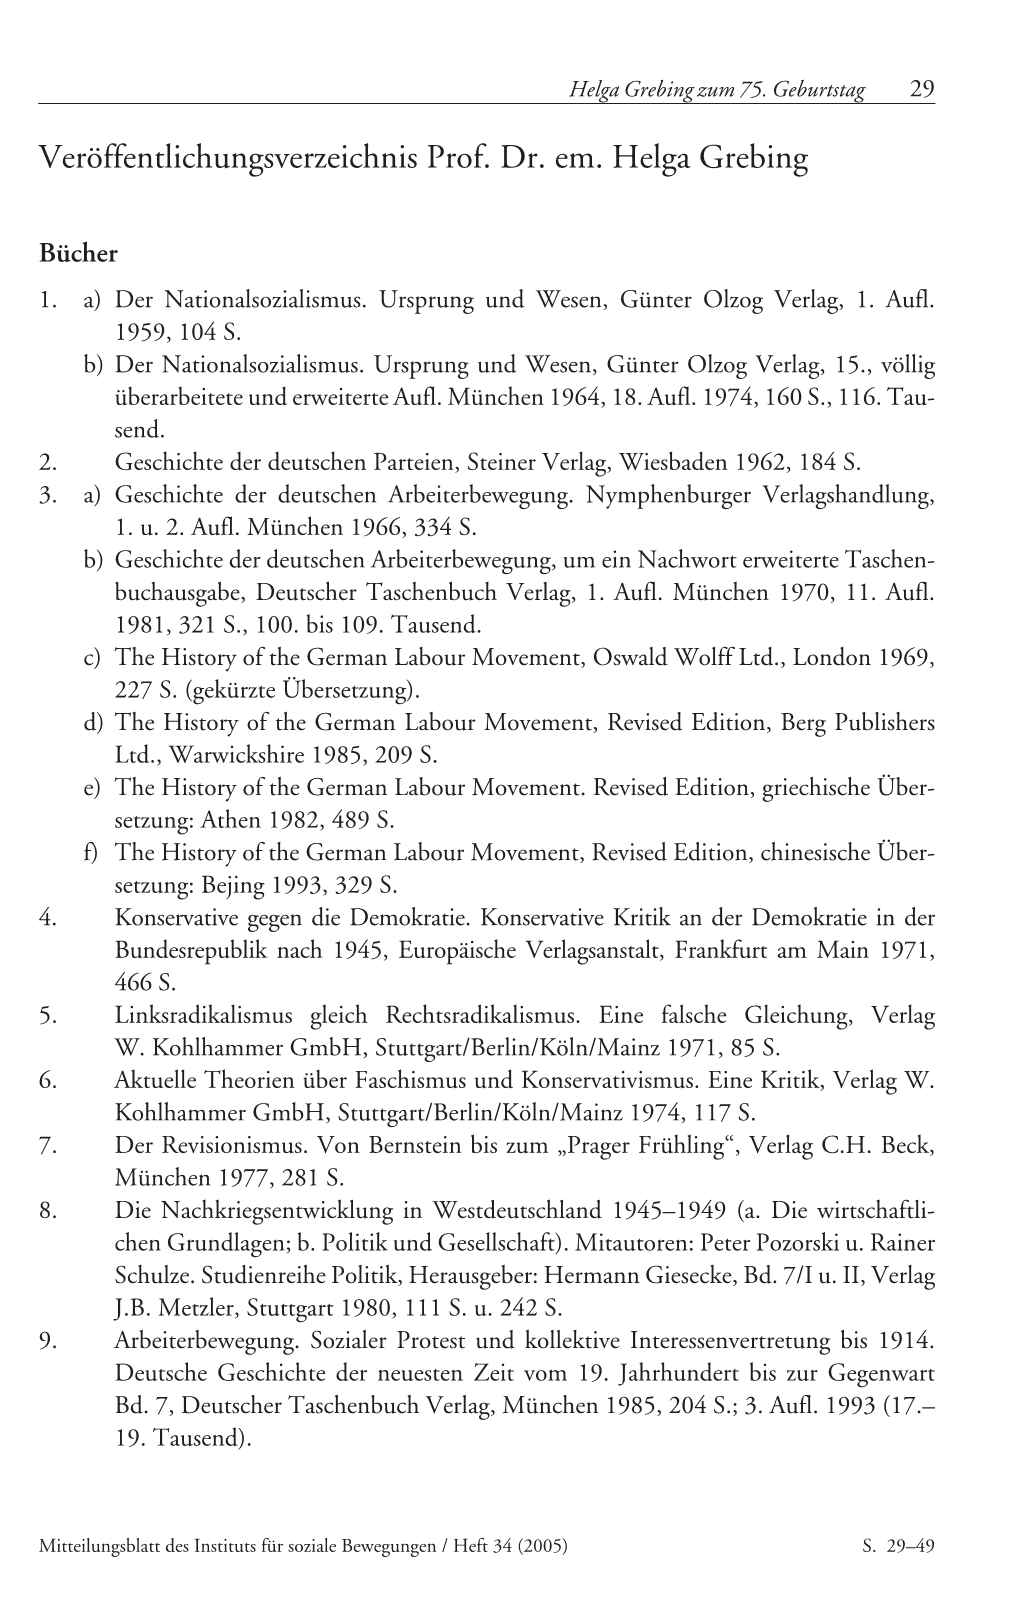 Veröffentlichungsverzeichnis Prof. Dr. Em. Helga Grebing